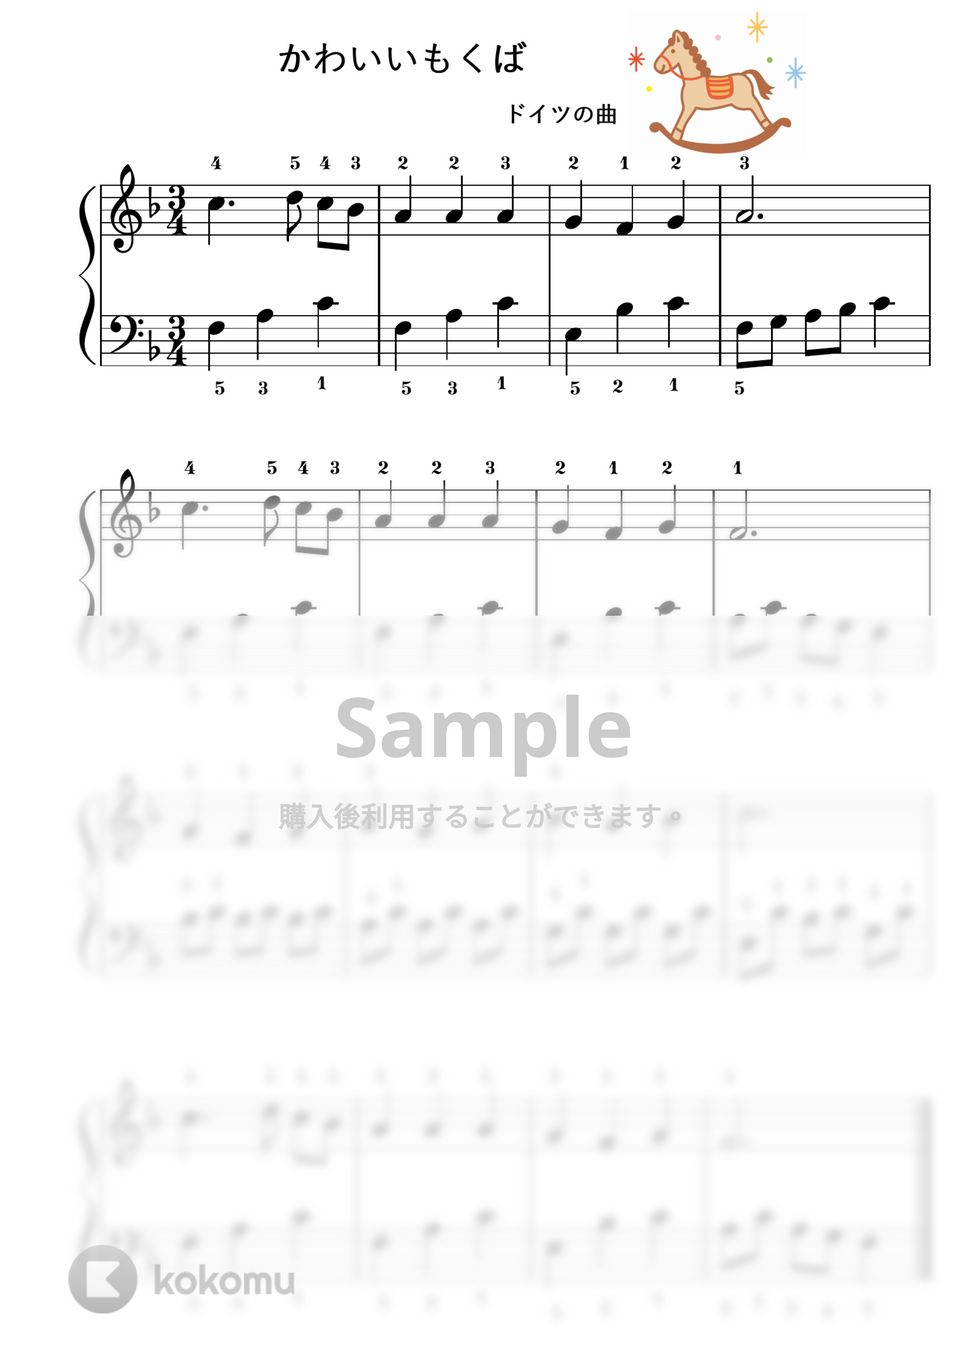 【初級】かわいいもくば/移調の練習セット♪ by ピアノの先生の楽譜集